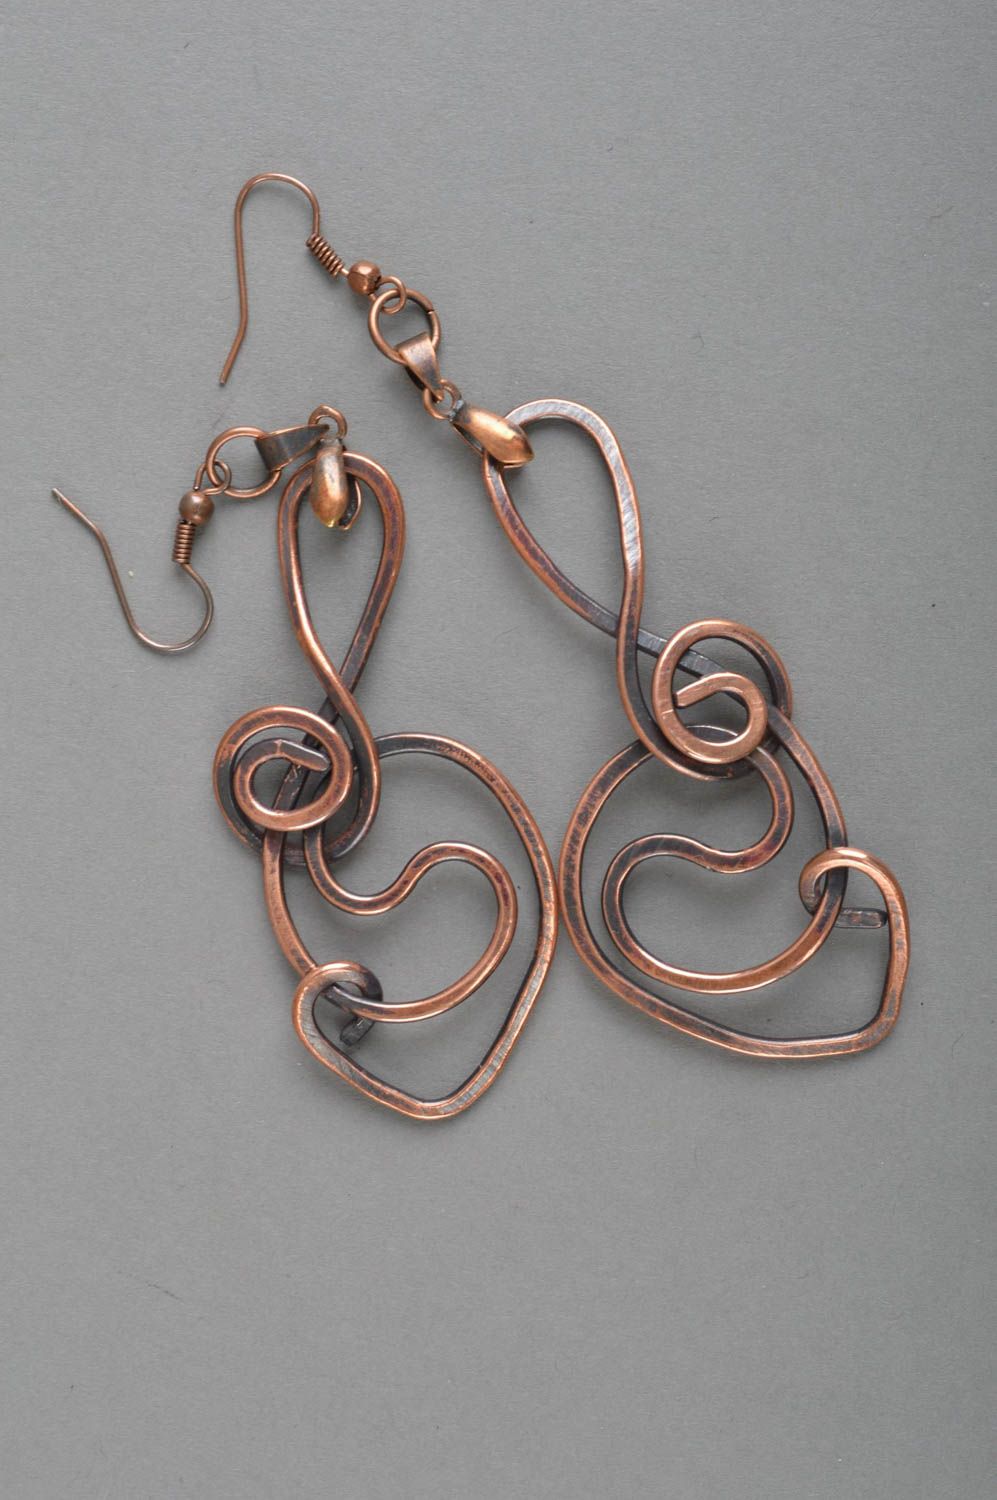 Unusual handmade metal earrings stylish copper earrings designer jewelry ideas photo 2